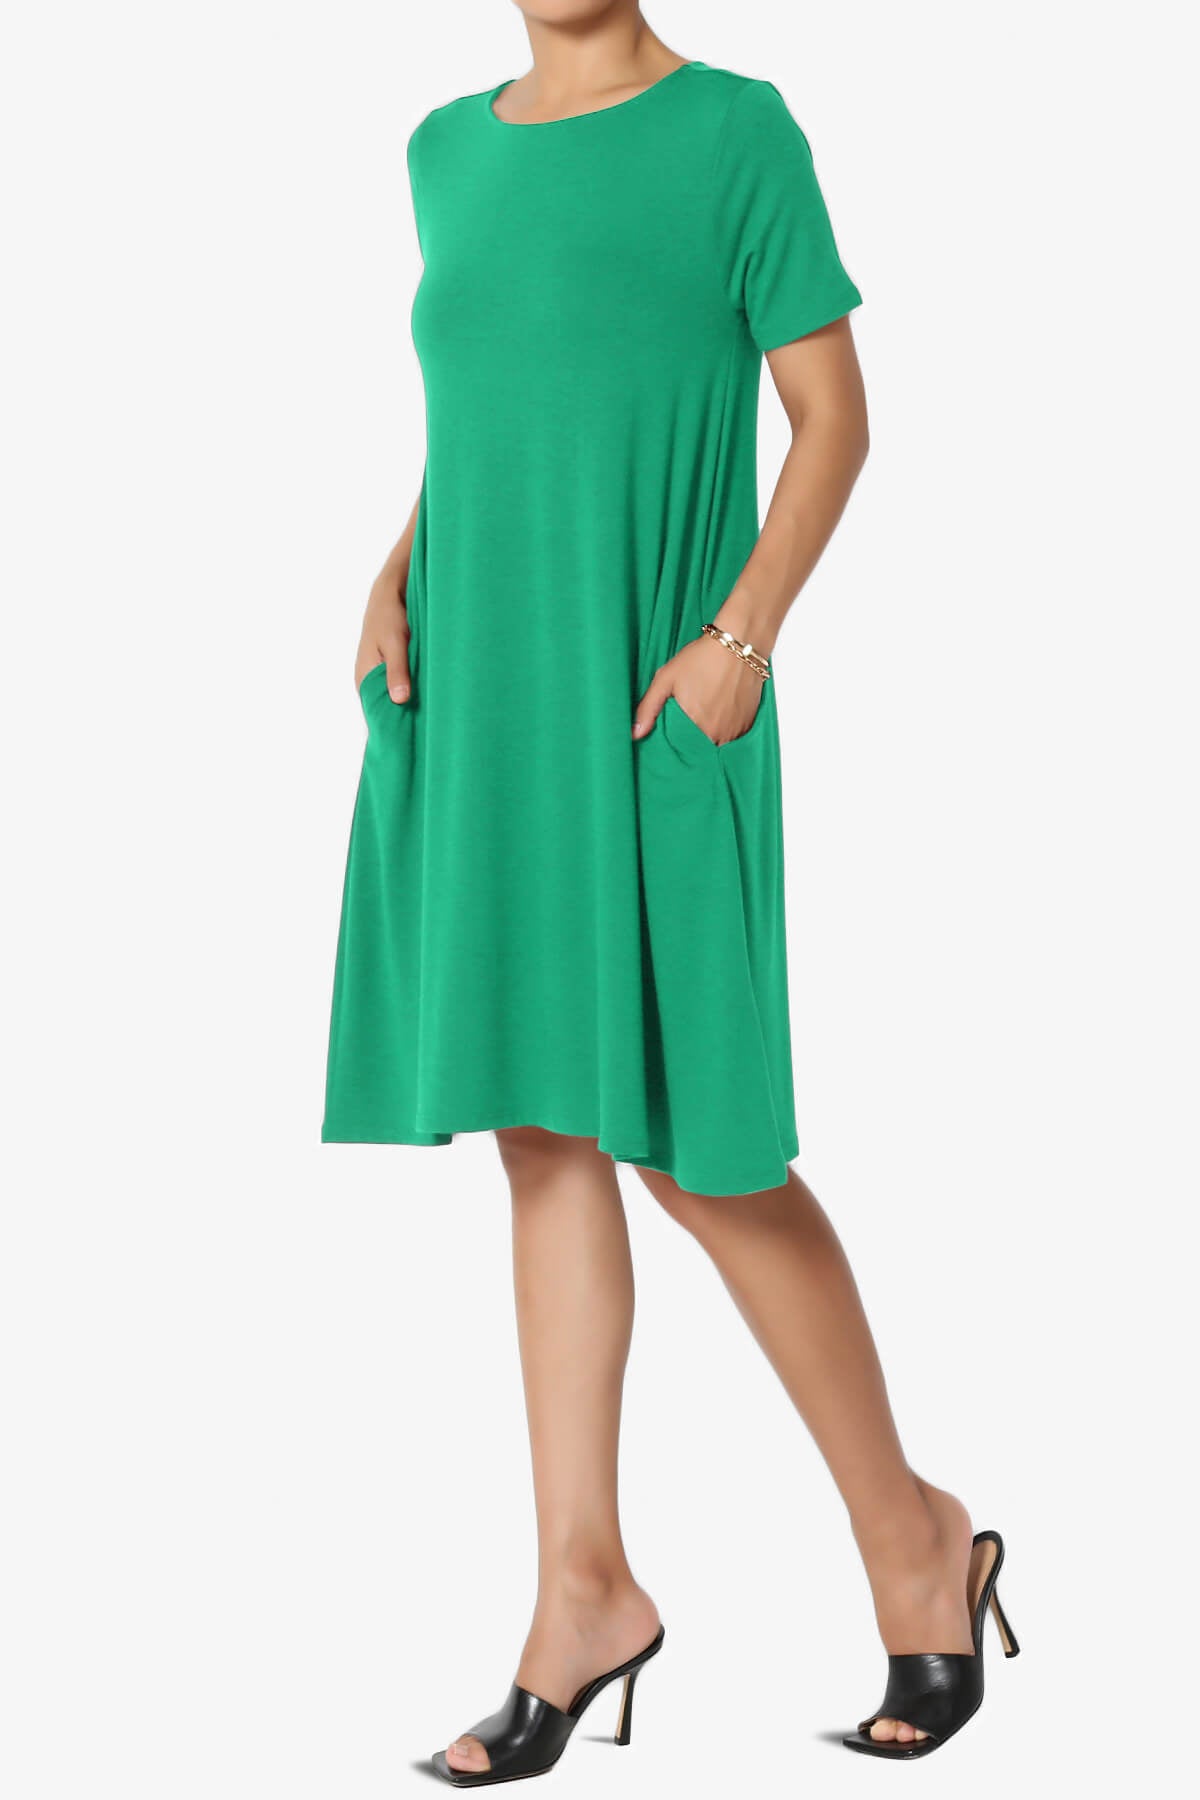 Allie Short Sleeve Jersey A-Line Dress KELLY GREEN_3